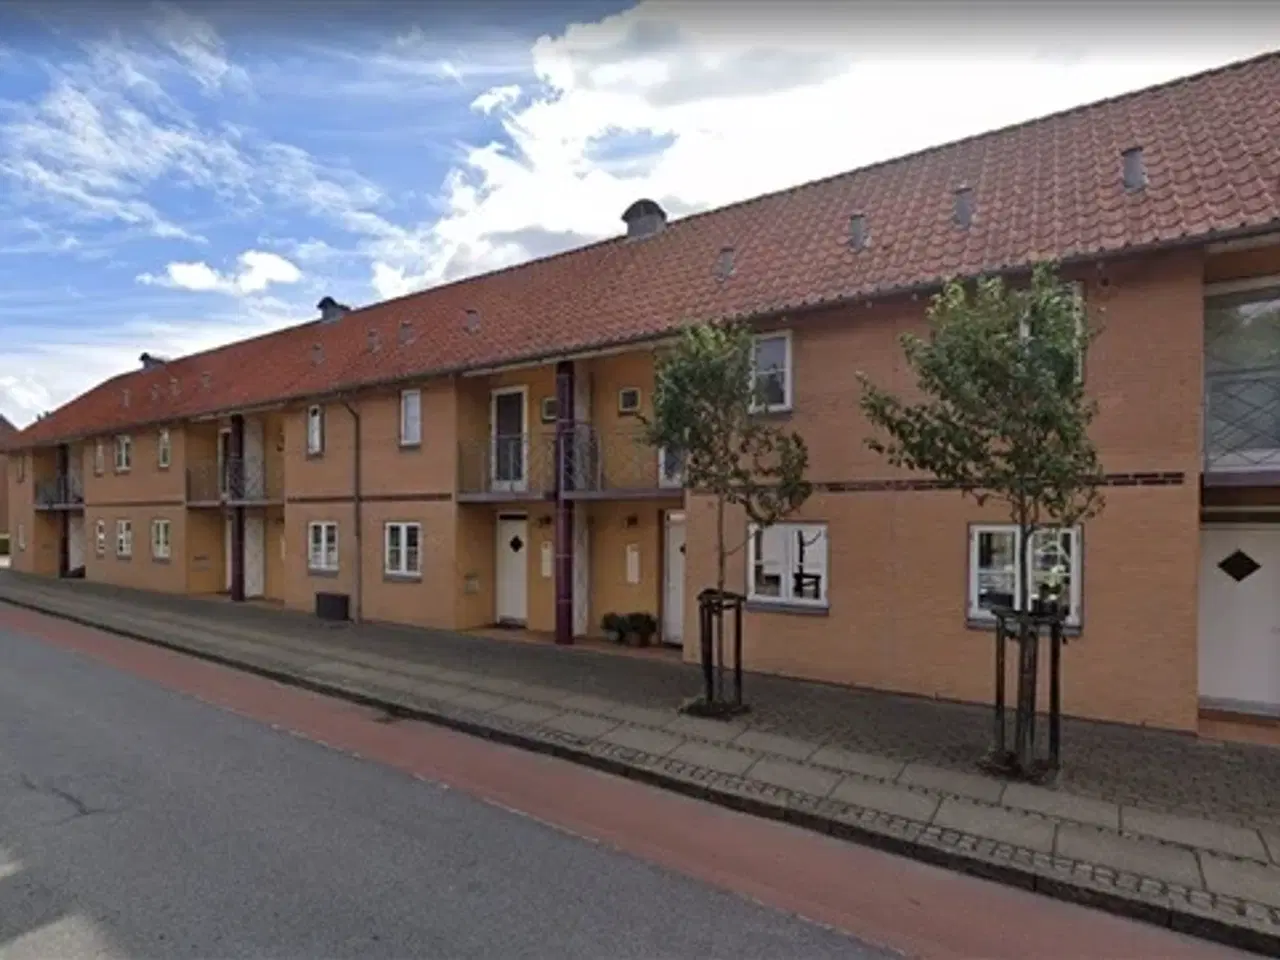 Billede 1 - Nørregade, 88 m2, 4 værelser, 8.400 kr., Odder, Aarhus